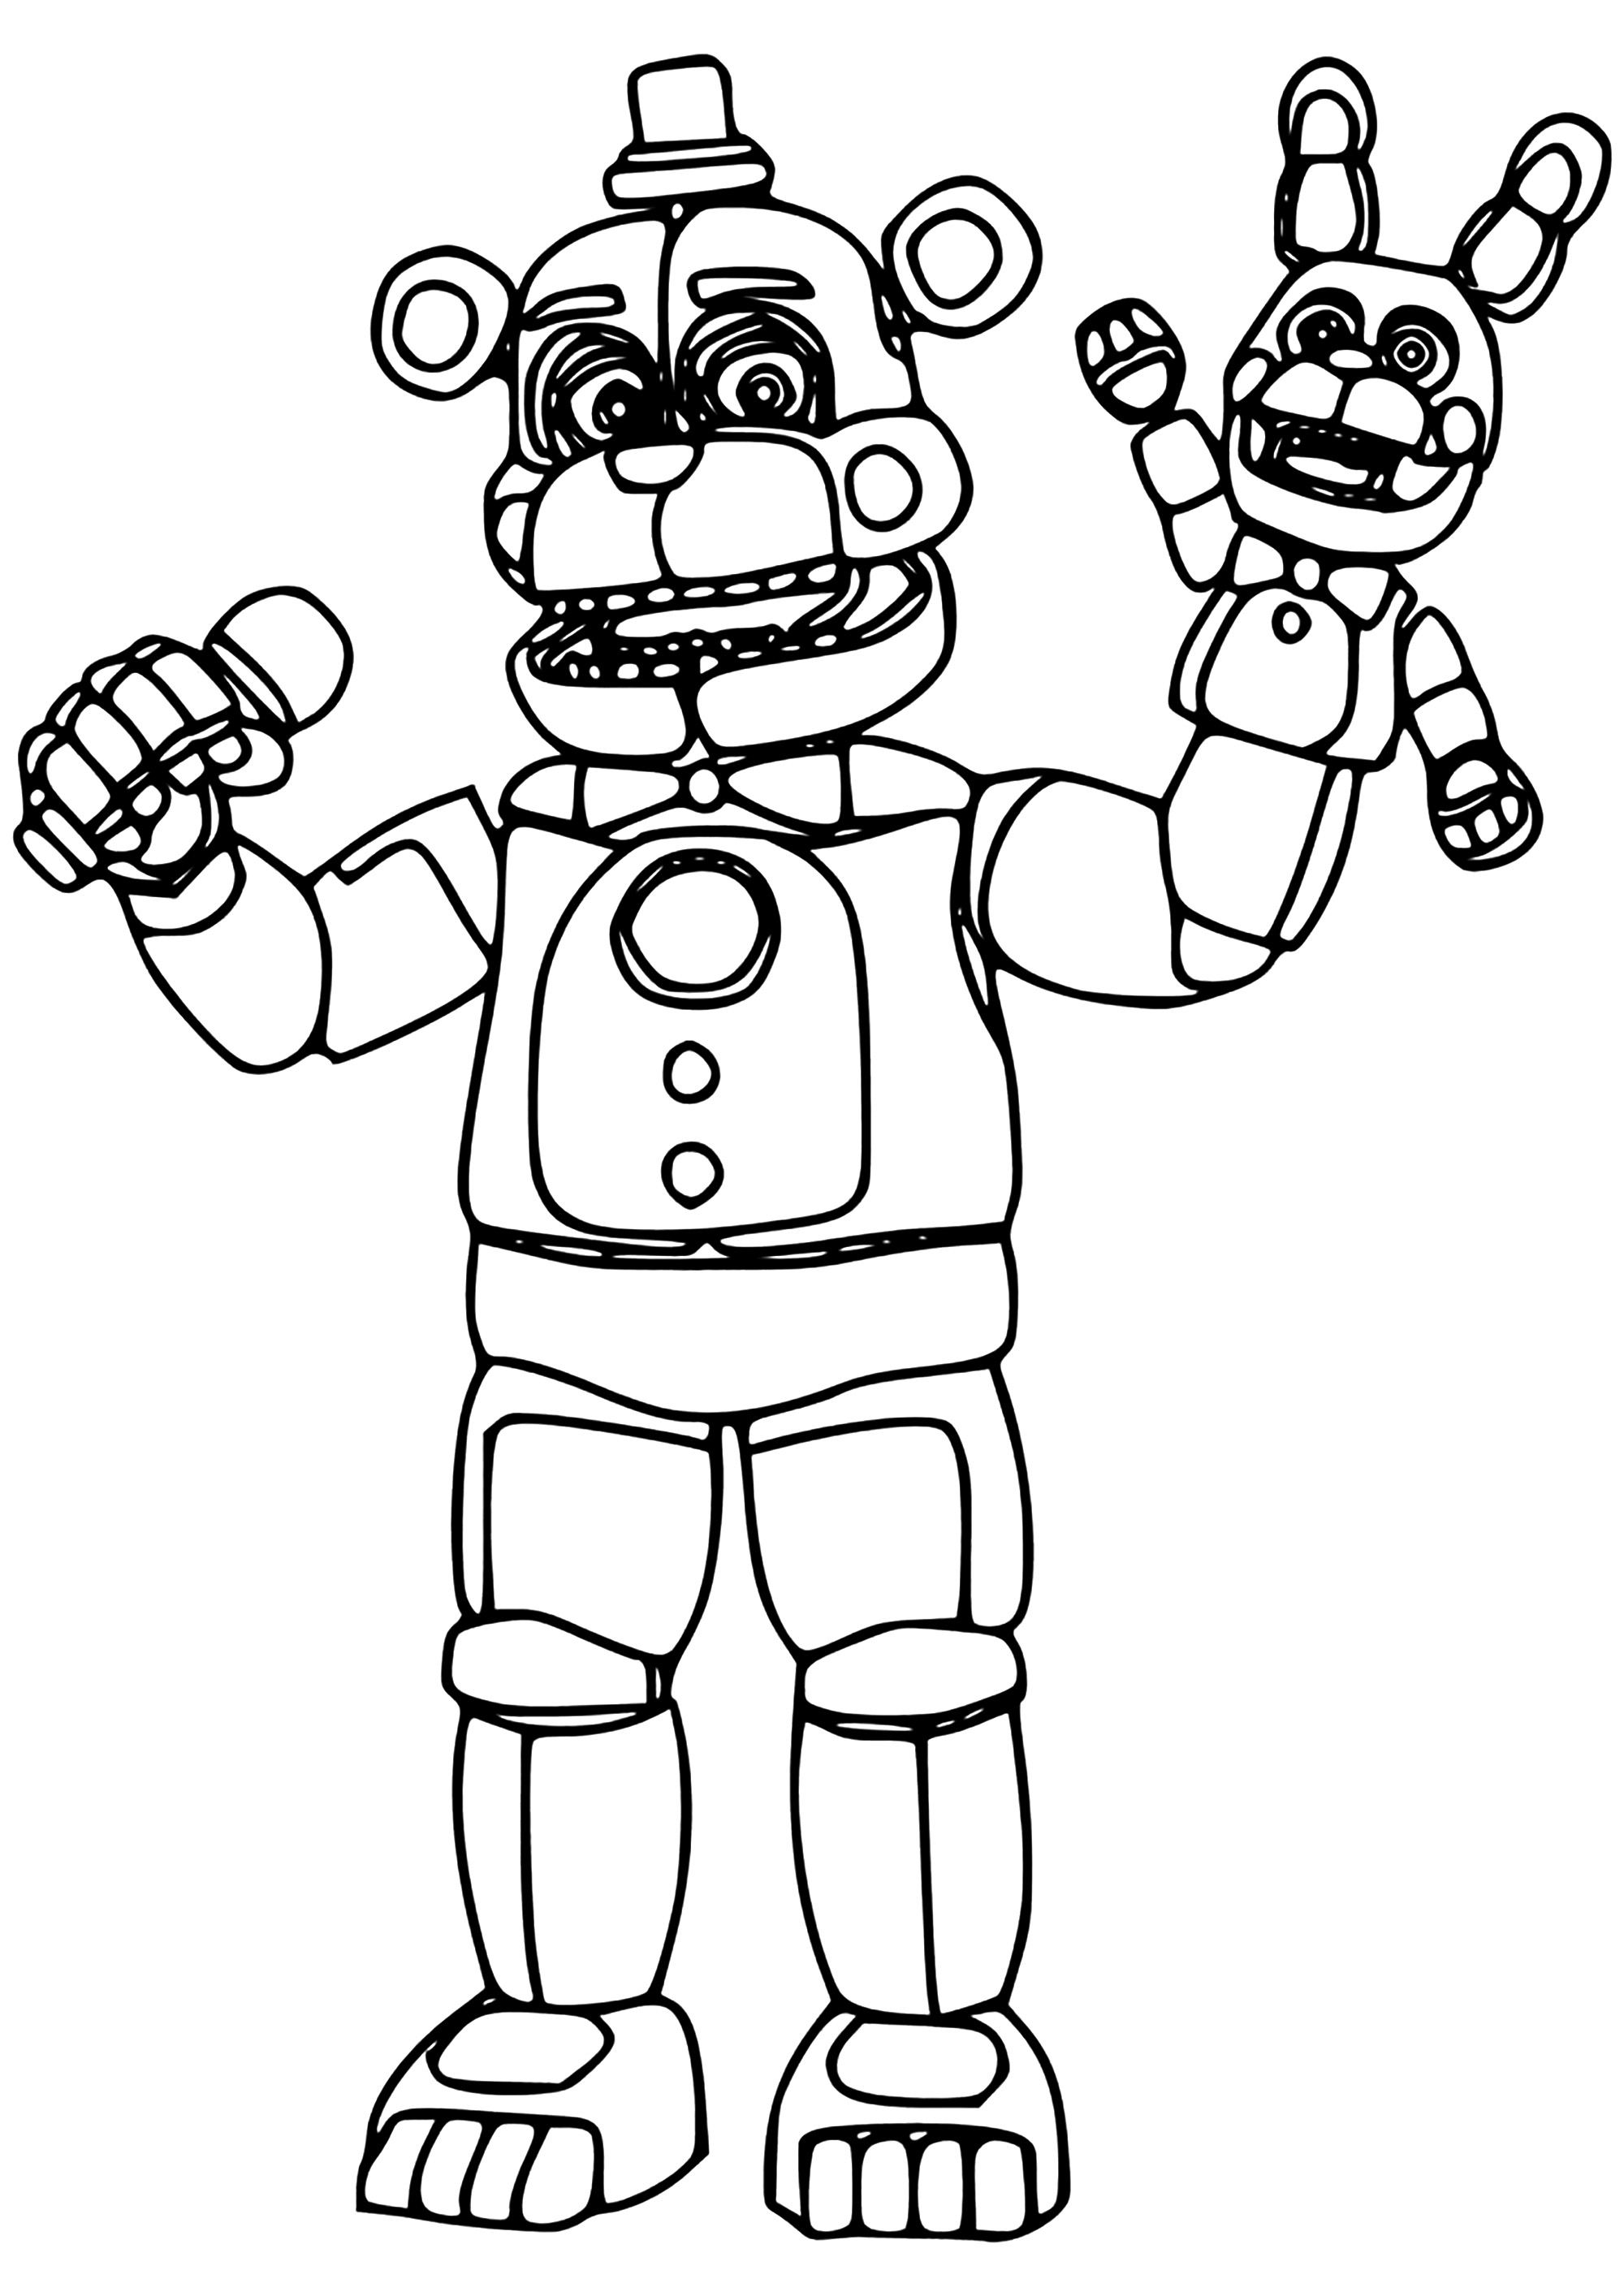 Freddy Fazbear com uma marioneta